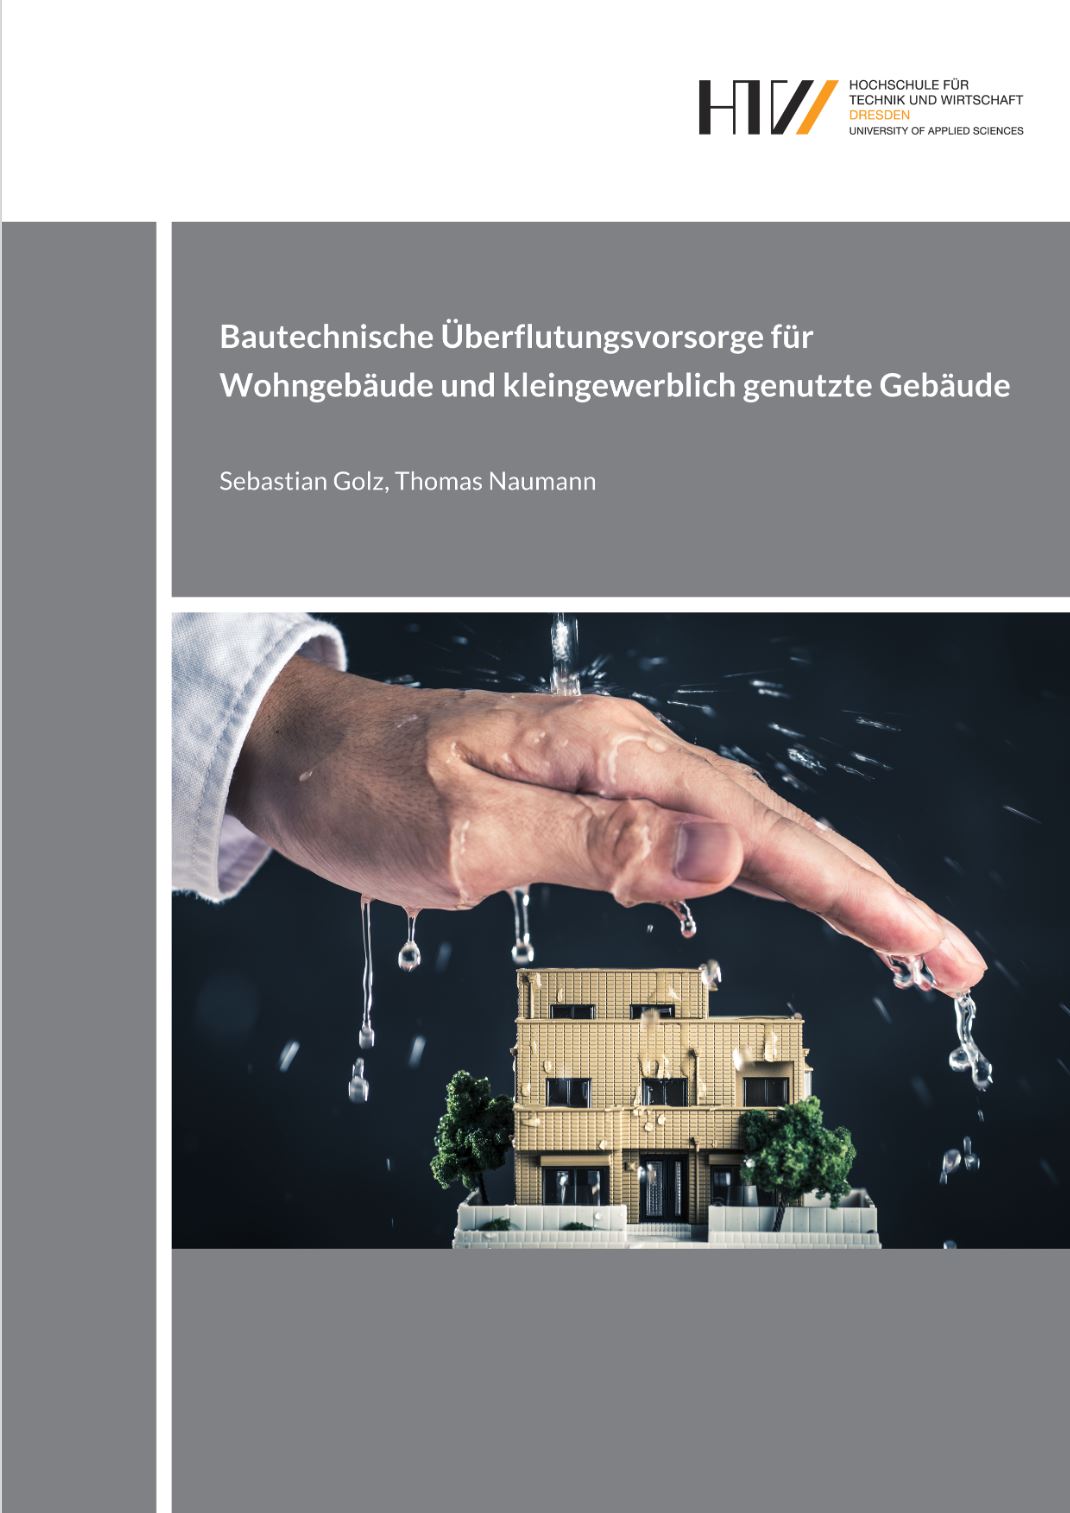 Bautechnische Ueberflutungsvorsorge für Wohngebaeude